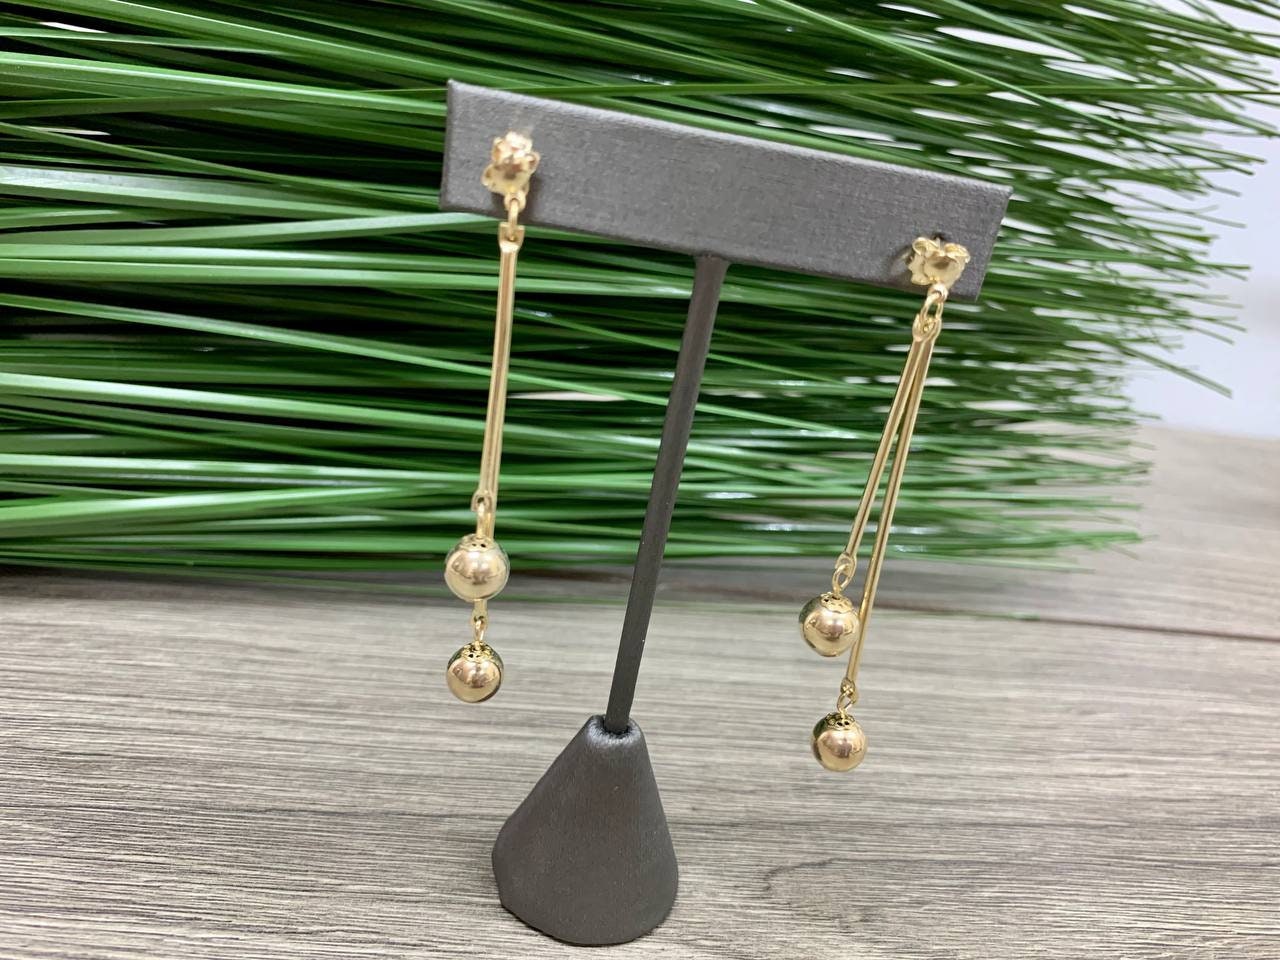 18k Gold Filled Fancy Ball Knots Handing Drop Earring Wholesale Jewelry Supplies